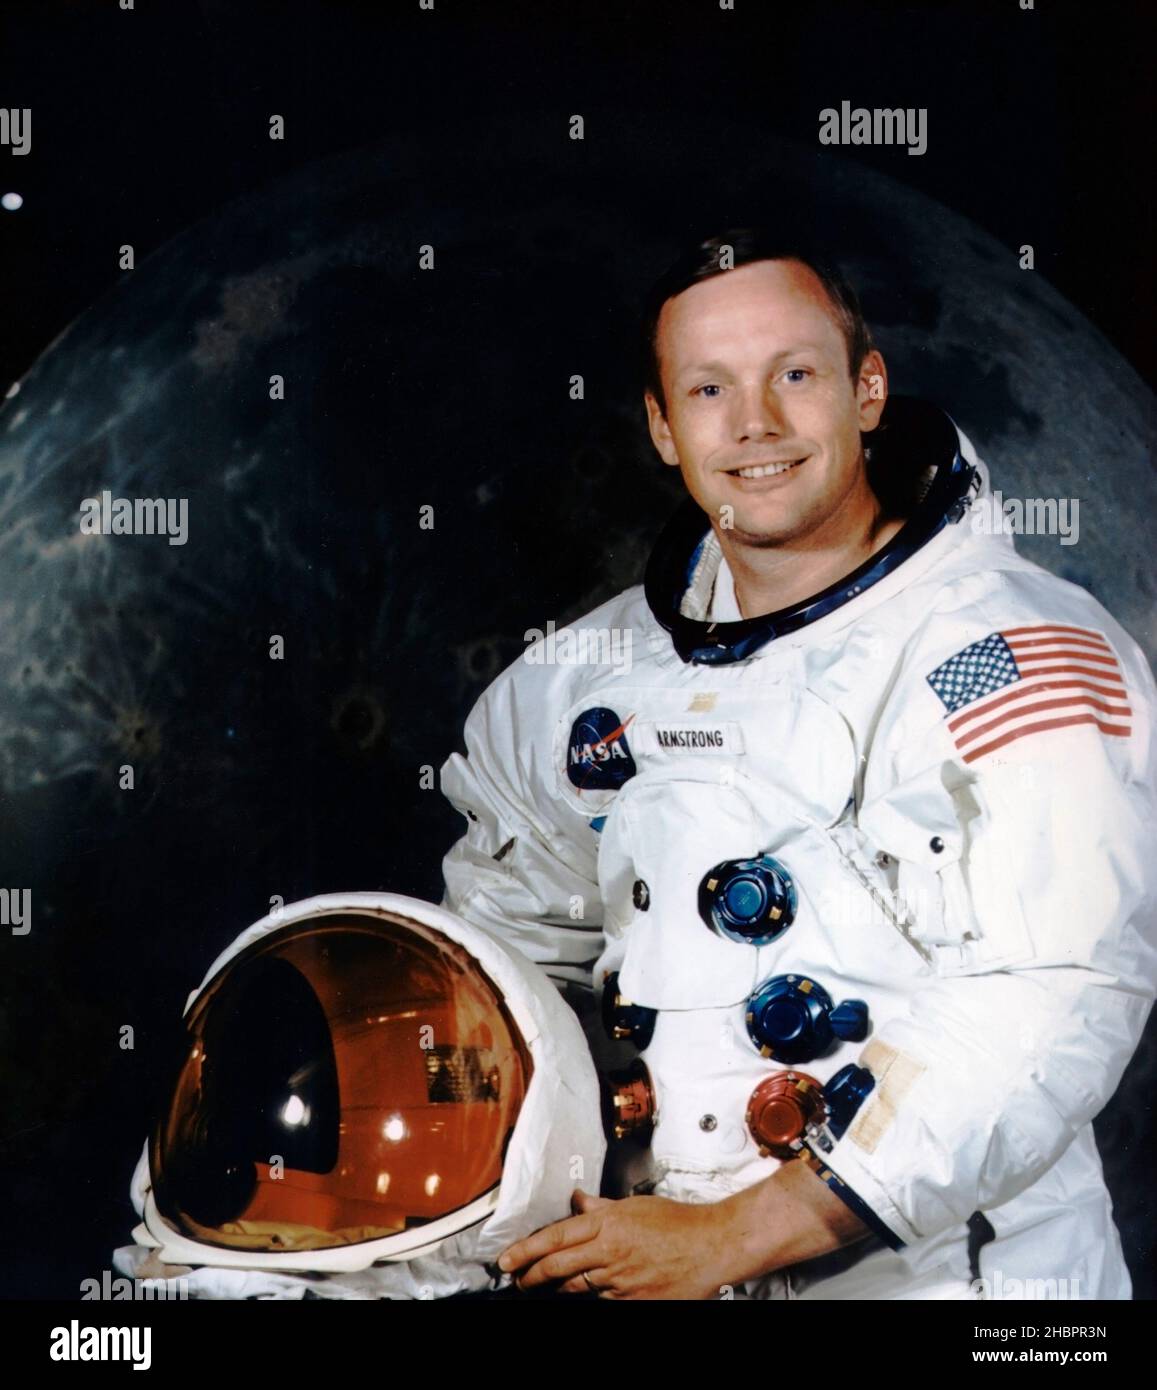 Neil Armstrong, in seinem Raumanzug gezogt, posiert für sein offizielles Apollo 11-Porträt. Armstrong begann seine Flugkarriere als Marineflieger. Während des Koreakrieges flog er 78 Kampfeinsätze. Armstrong trat dem Vorgänger der NASA, NACA (National Advisory Committee for Aeronautics), als Forschungspilot am Lewis Laboratory in Cleveland bei und wechselte später zur NACA High Speed Flight Station an der Edwards AFB, Kalifornien. Er war Projektpilot auf vielen bahnbrechenden Hochgeschwindigkeitsflugzeugen, darunter der X-15 mit 4.000 mph/h. Er hat über 200 verschiedene Flugzeugmodelle geflogen, darunter Jets, Raketen und Helic Stockfoto